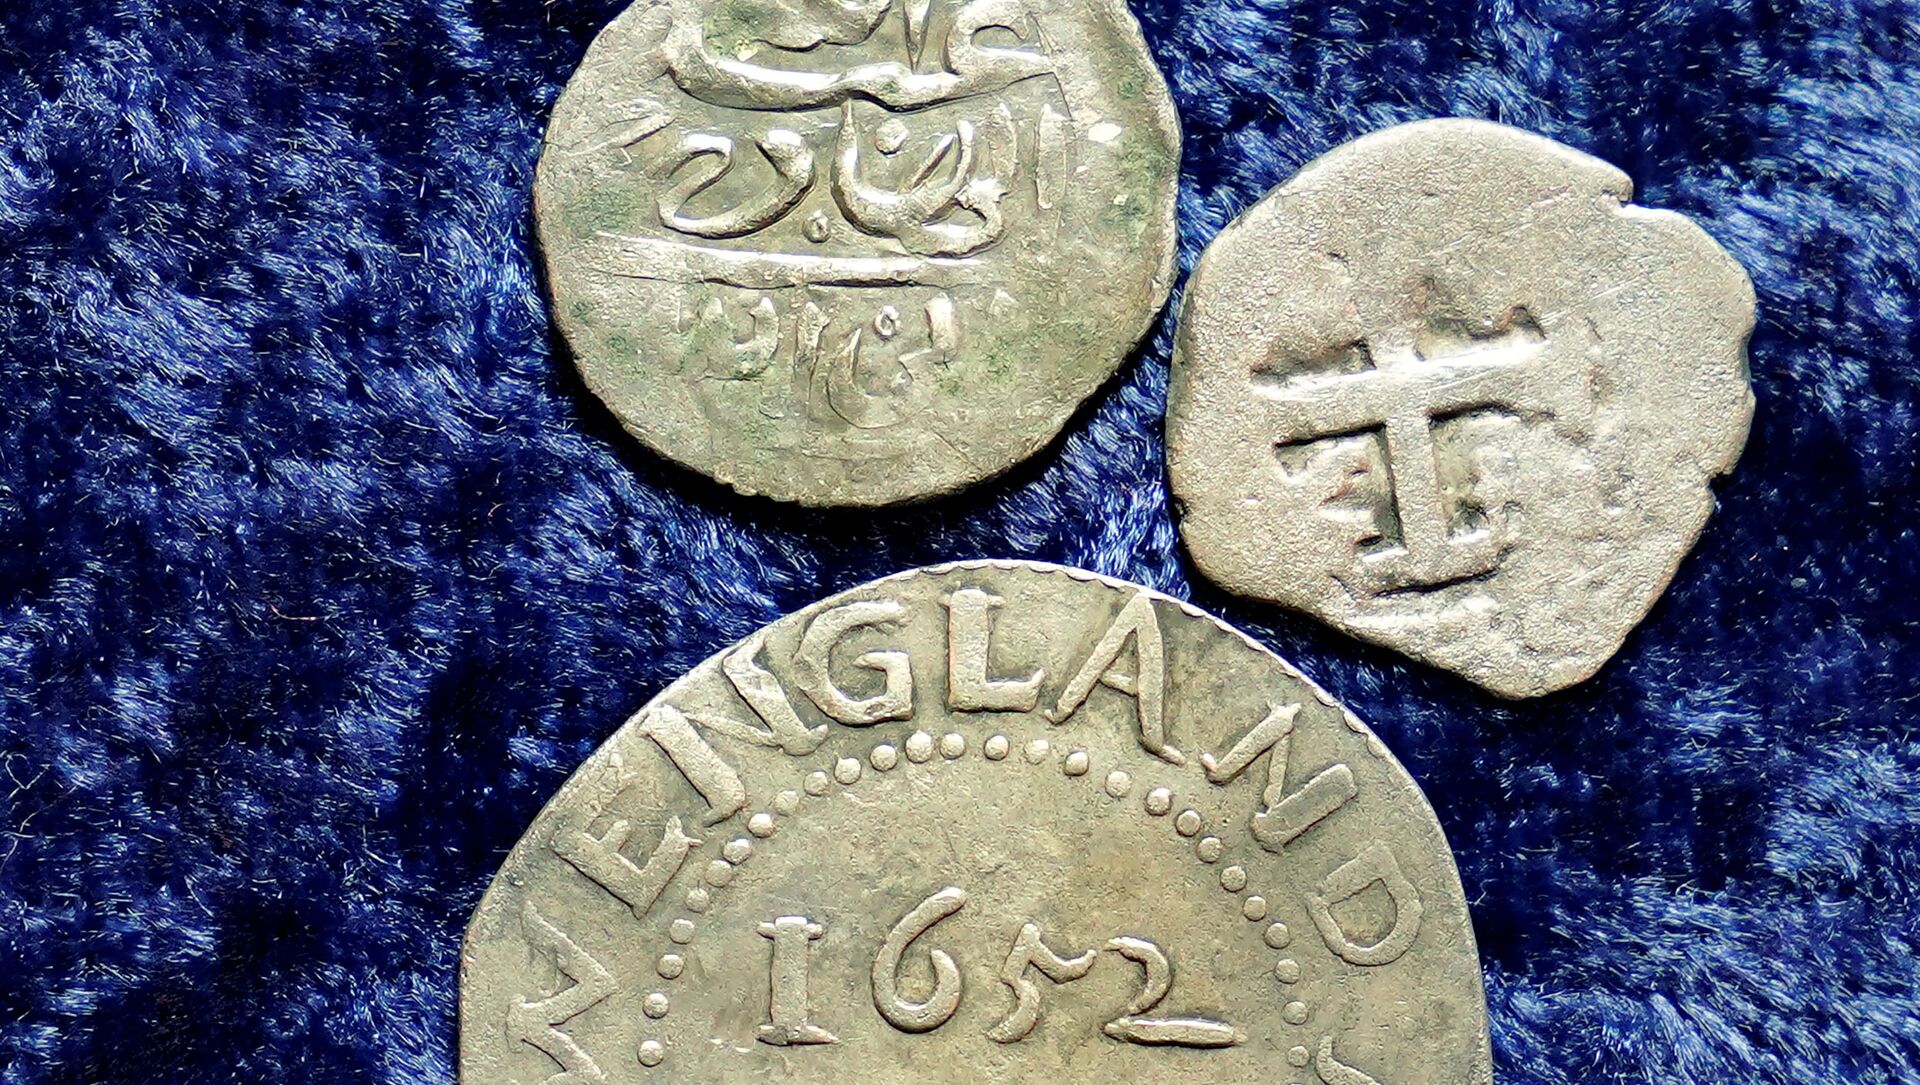 Pronađeni novčići iskovani u Jemenu u 17. veku - Sputnik Srbija, 1920, 03.04.2021